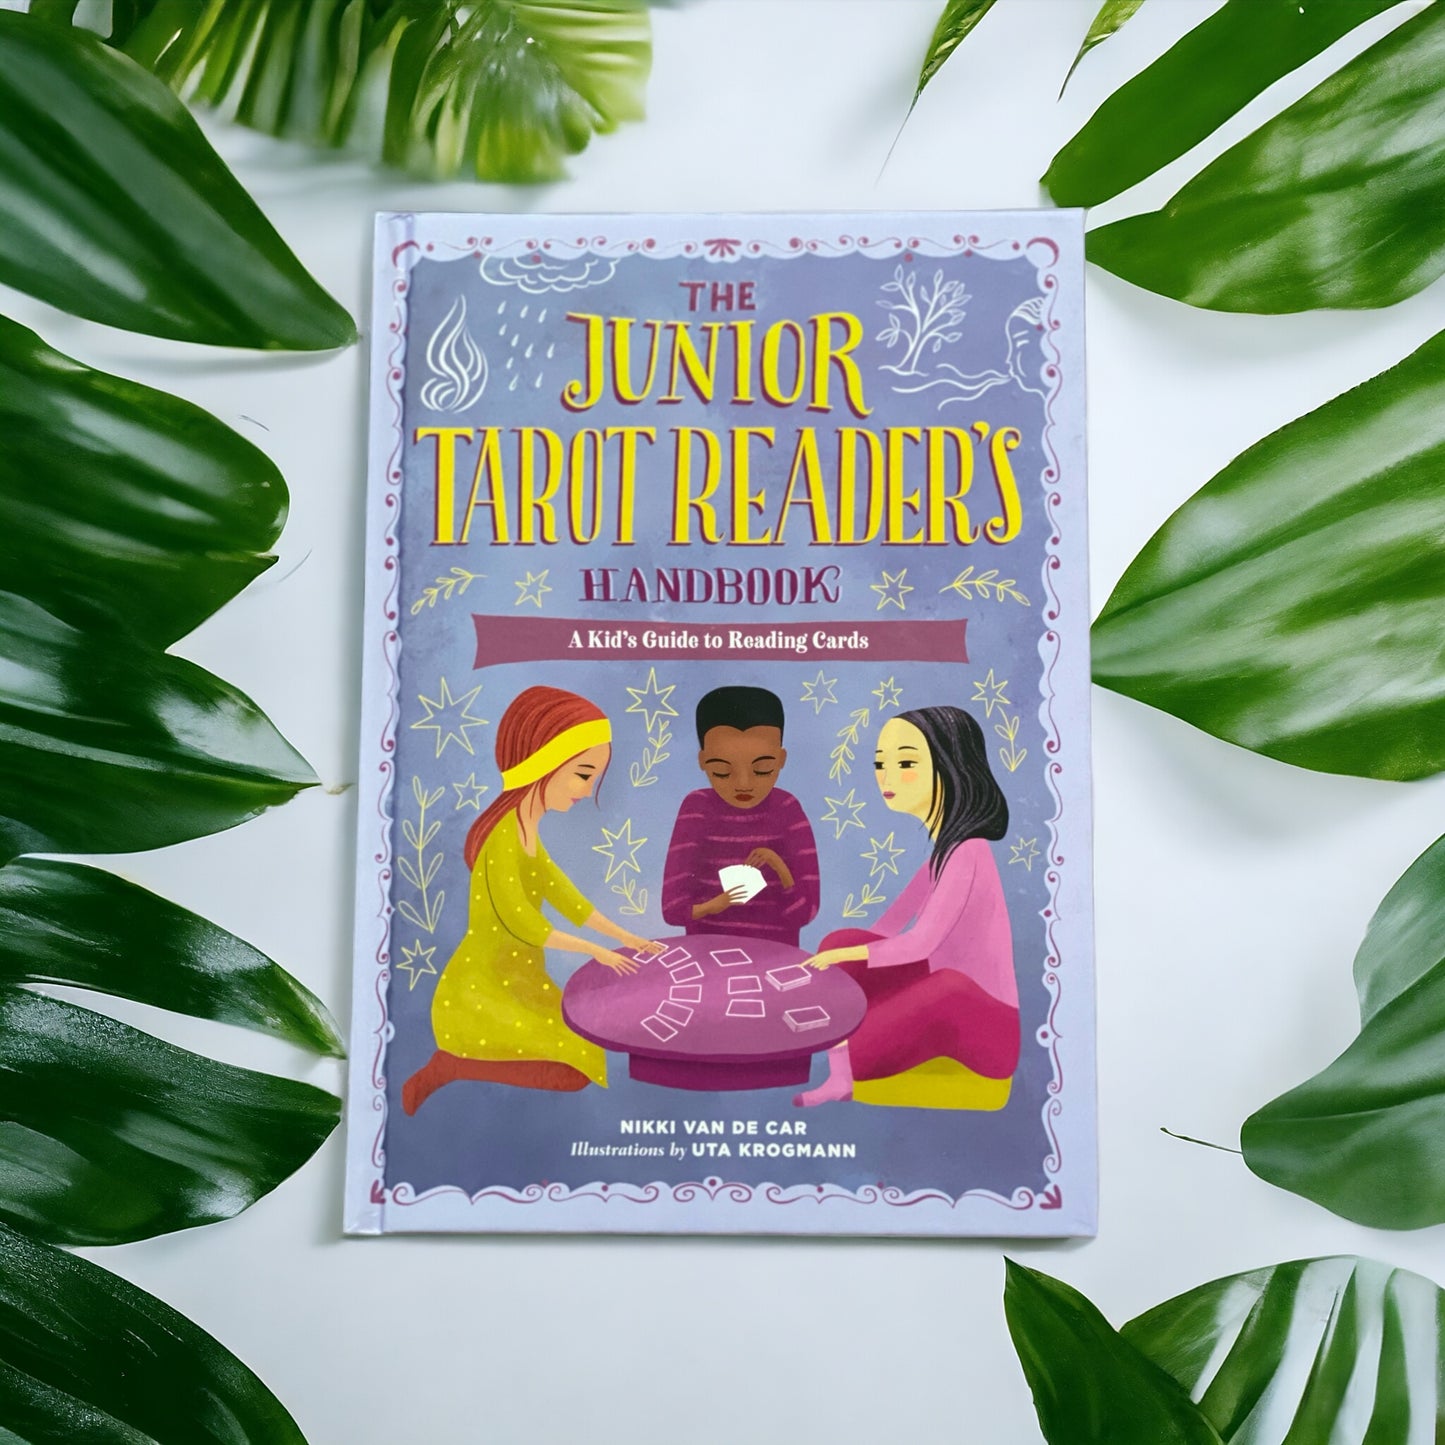 The Junior Tarot Readers handbook